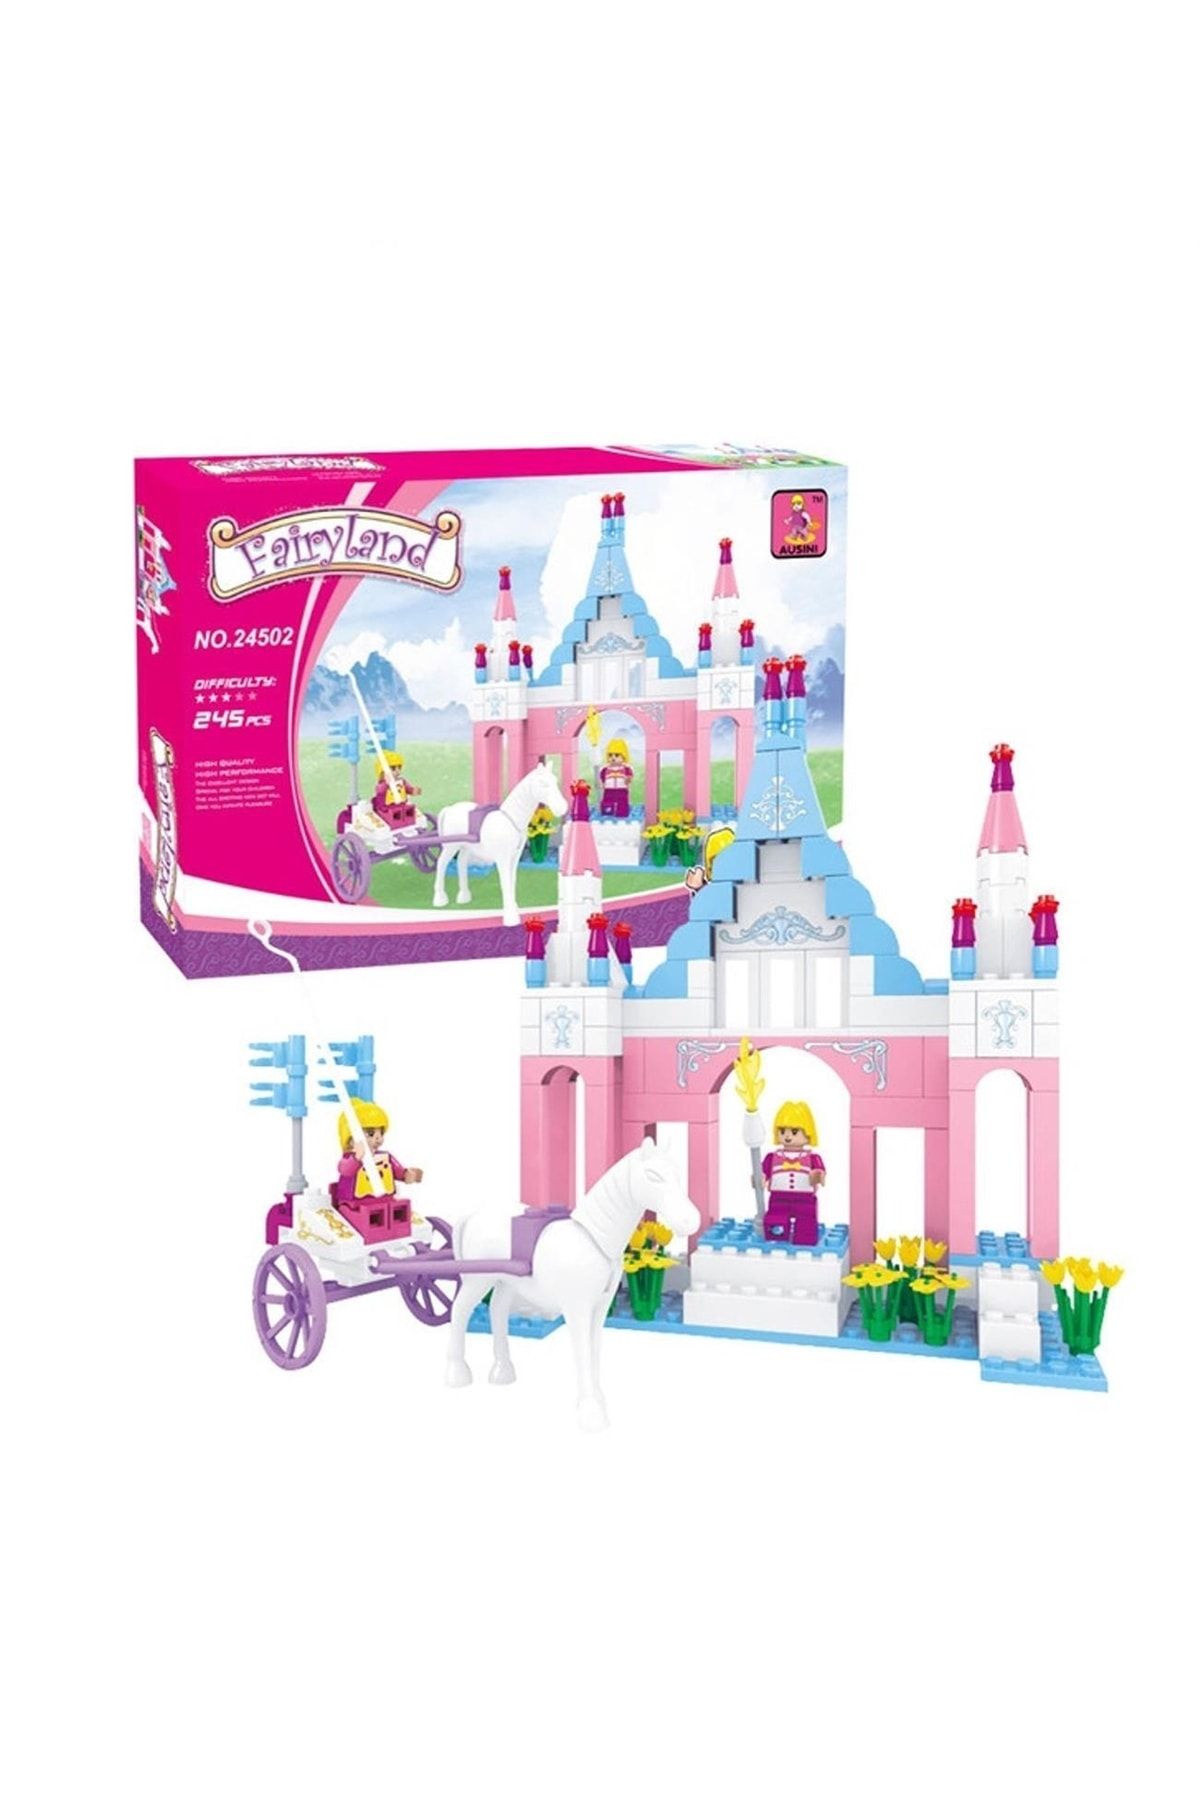 Sole Ausini-asya Bricks 24502, Fairyland 245 Parça Şato Ve At Arabası Temalı Lego Seti